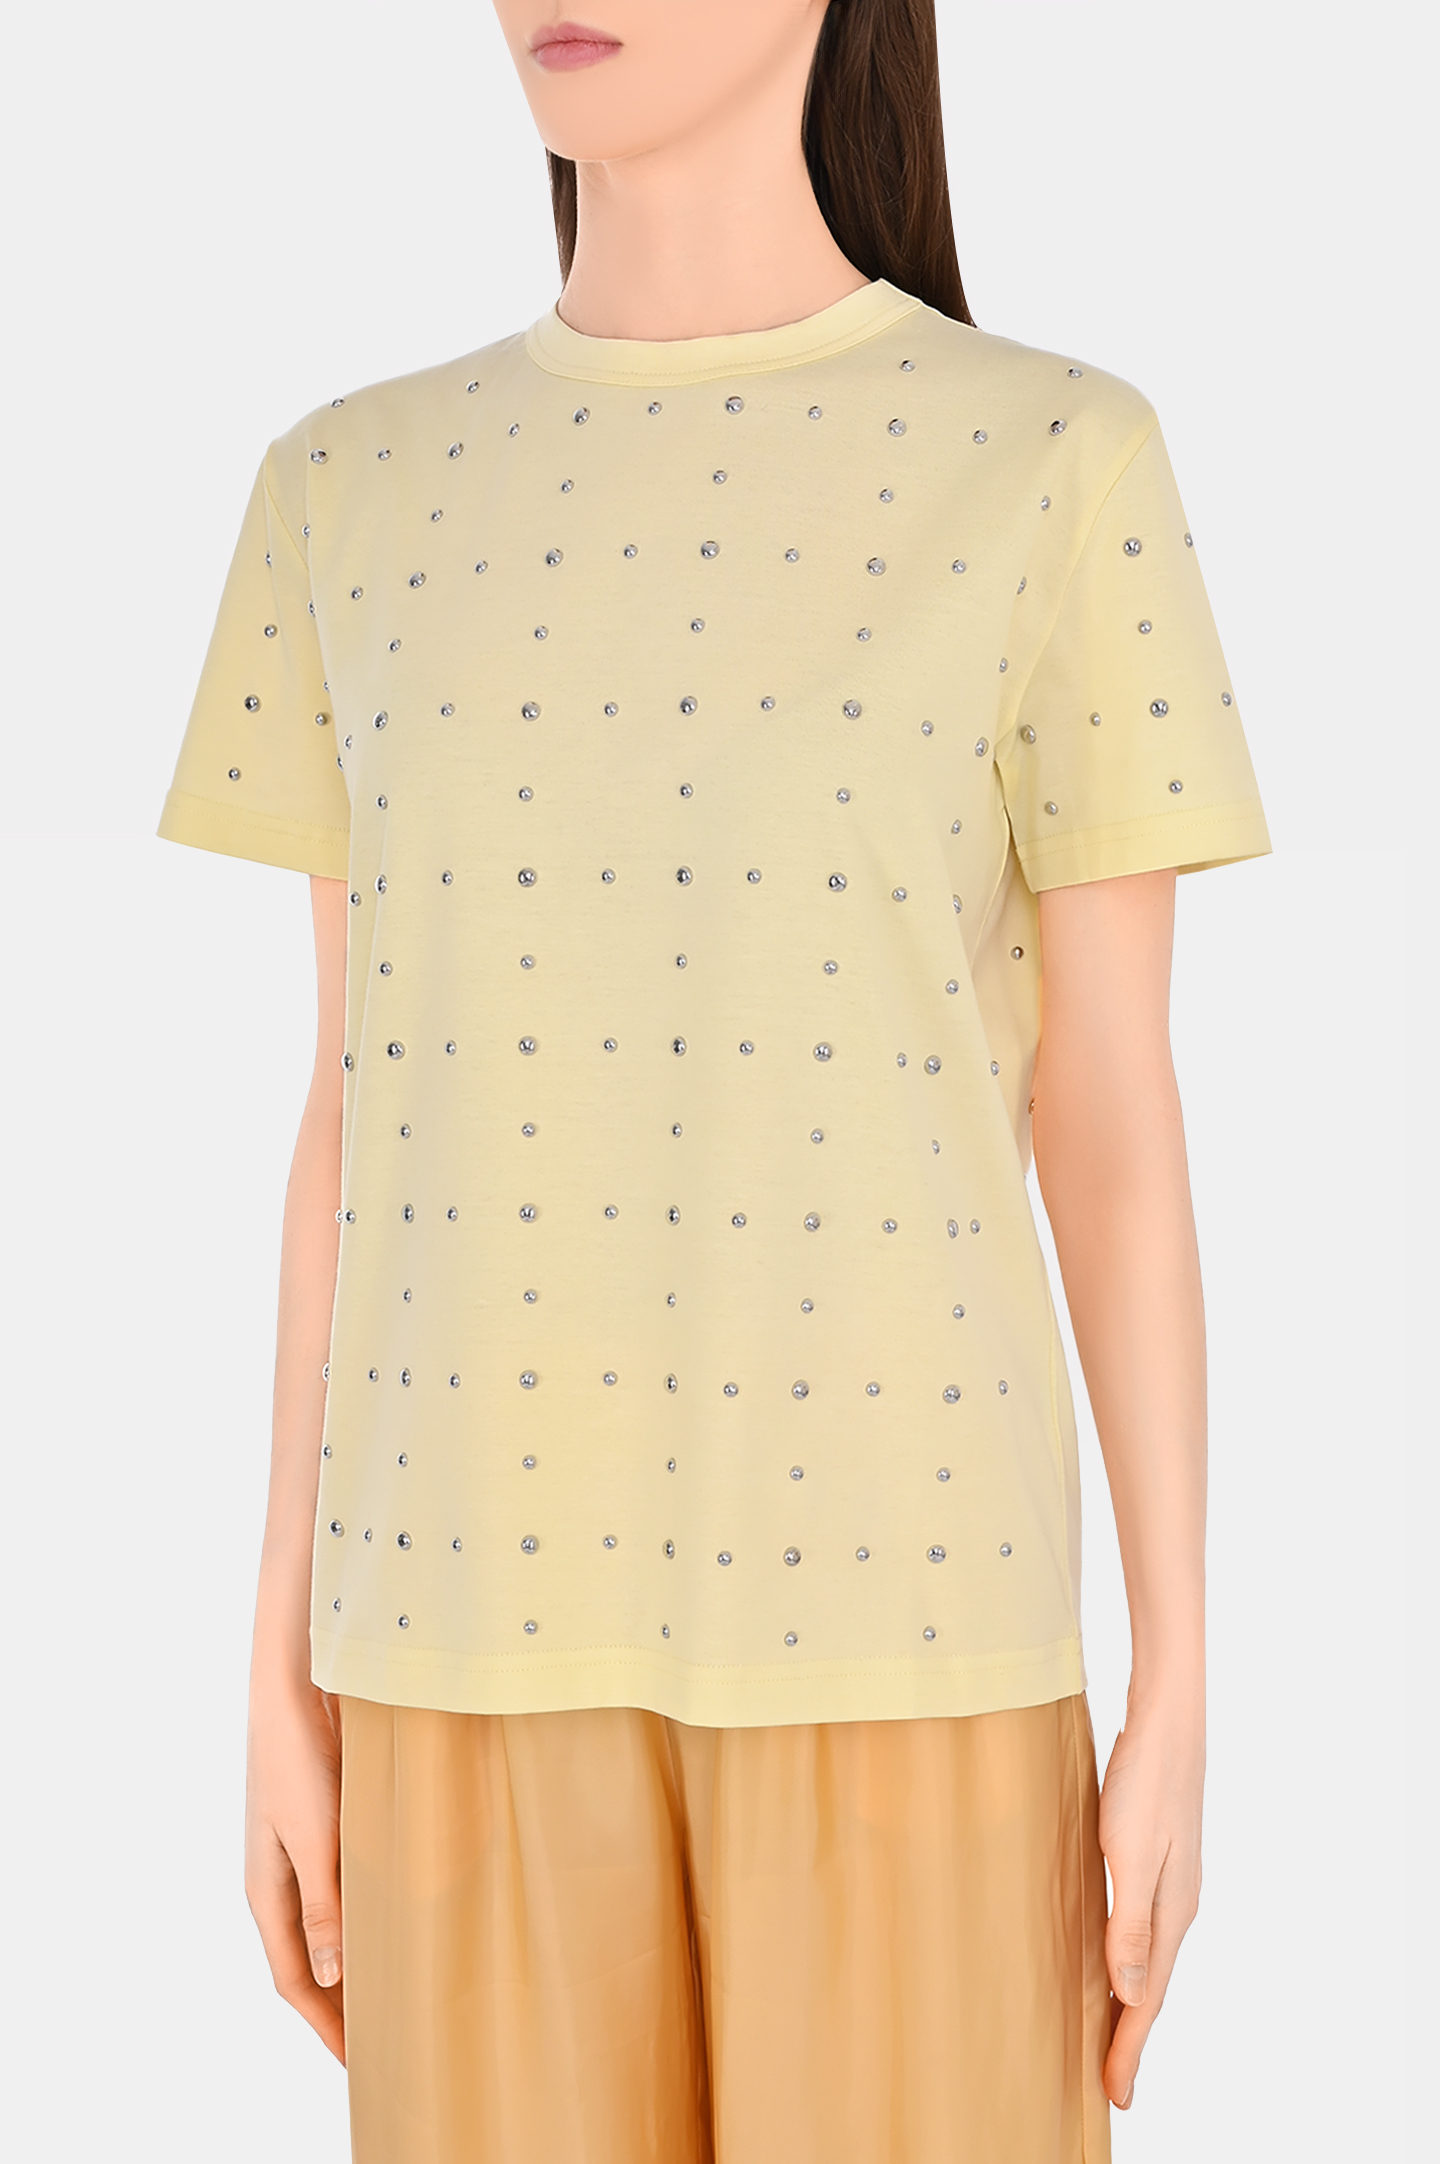 Хлоковая футболка со стразами FABIANA FILIPPI JED274F445H484, цвет: Желтый, Женский